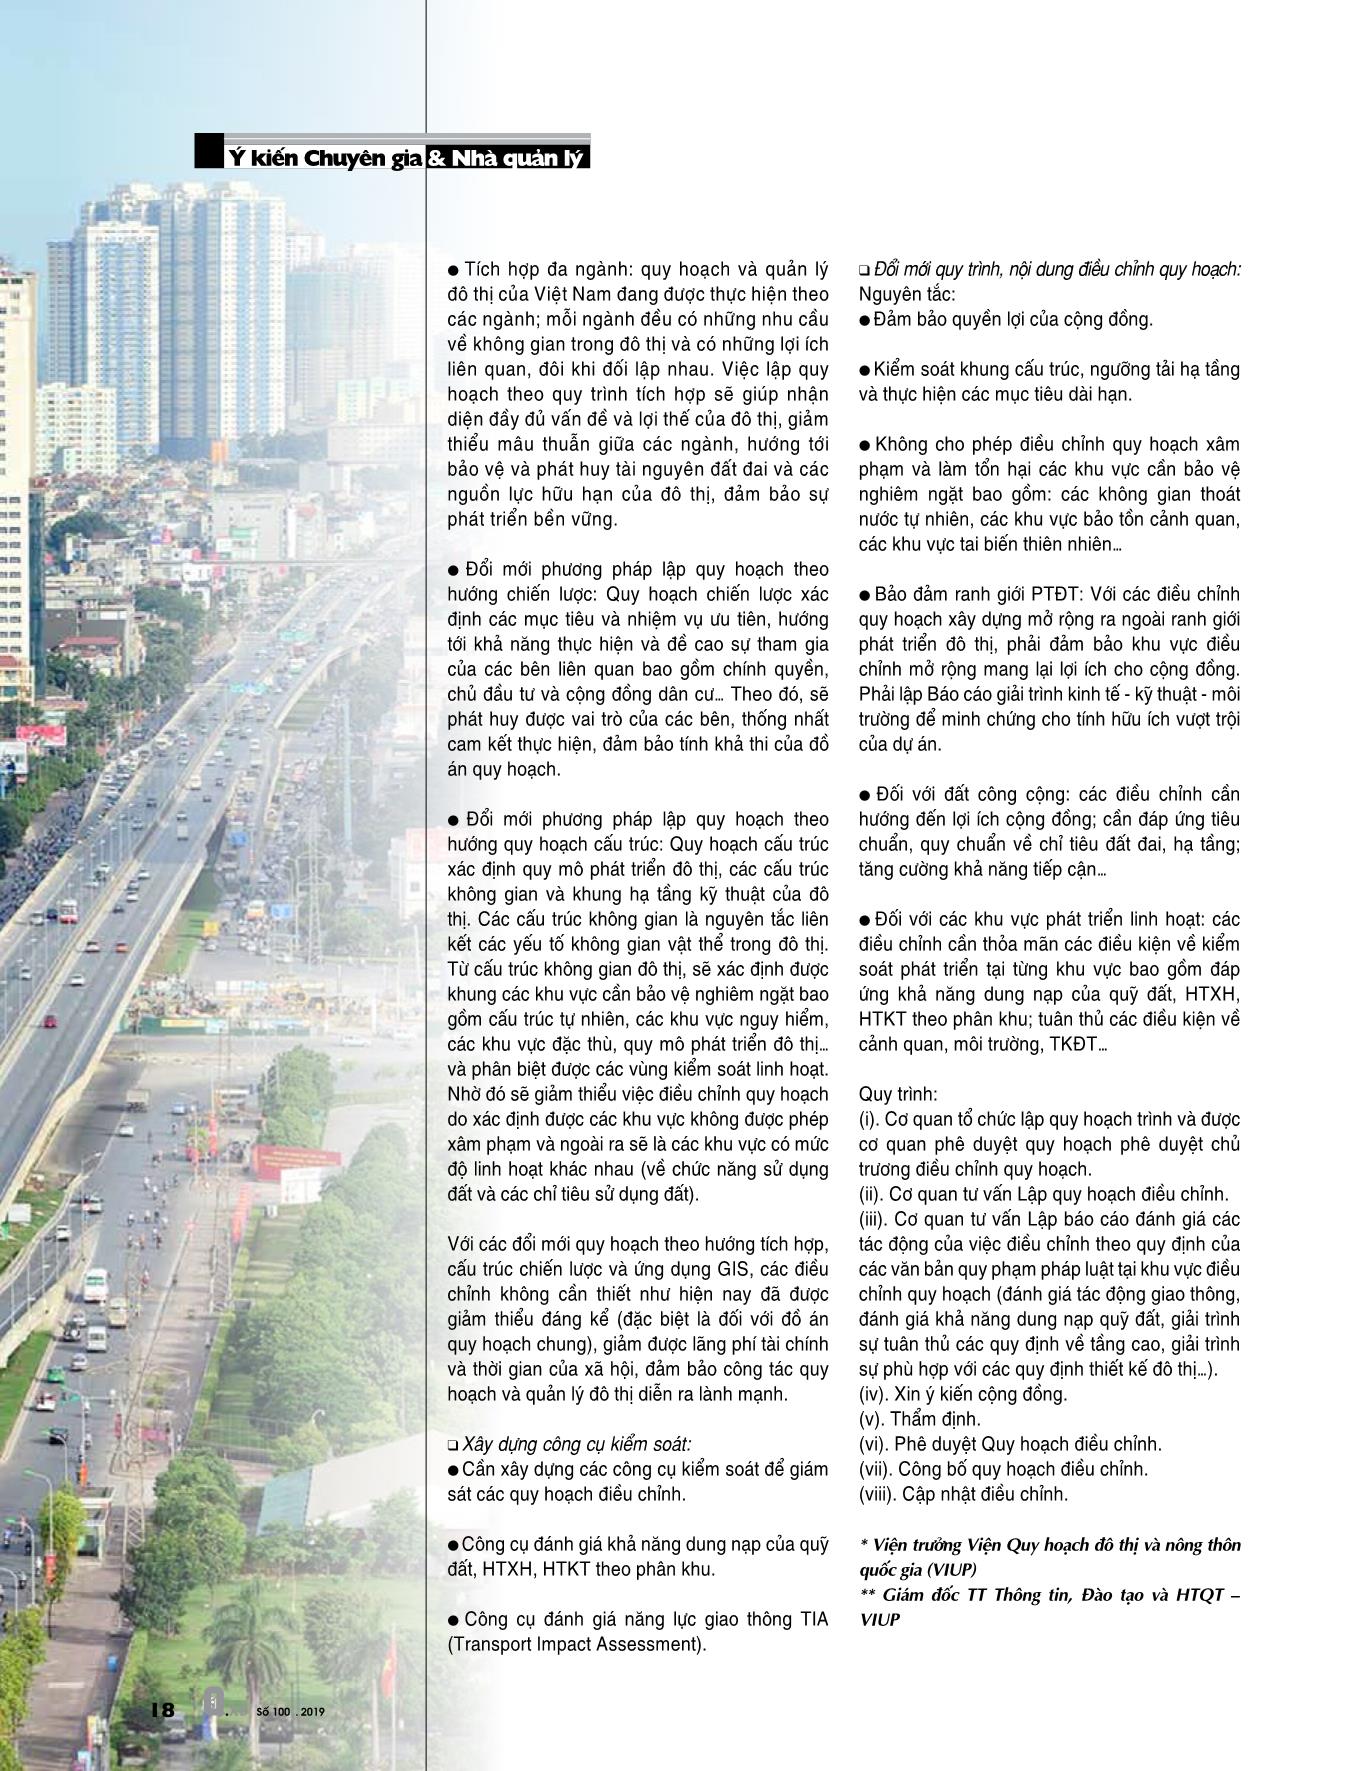 Đổi mới phương pháp luận quy hoạch và quản lý phát triển đô thị: Từ thực tiễn đến yêu cầu đổi mới (Phần 1) trang 9